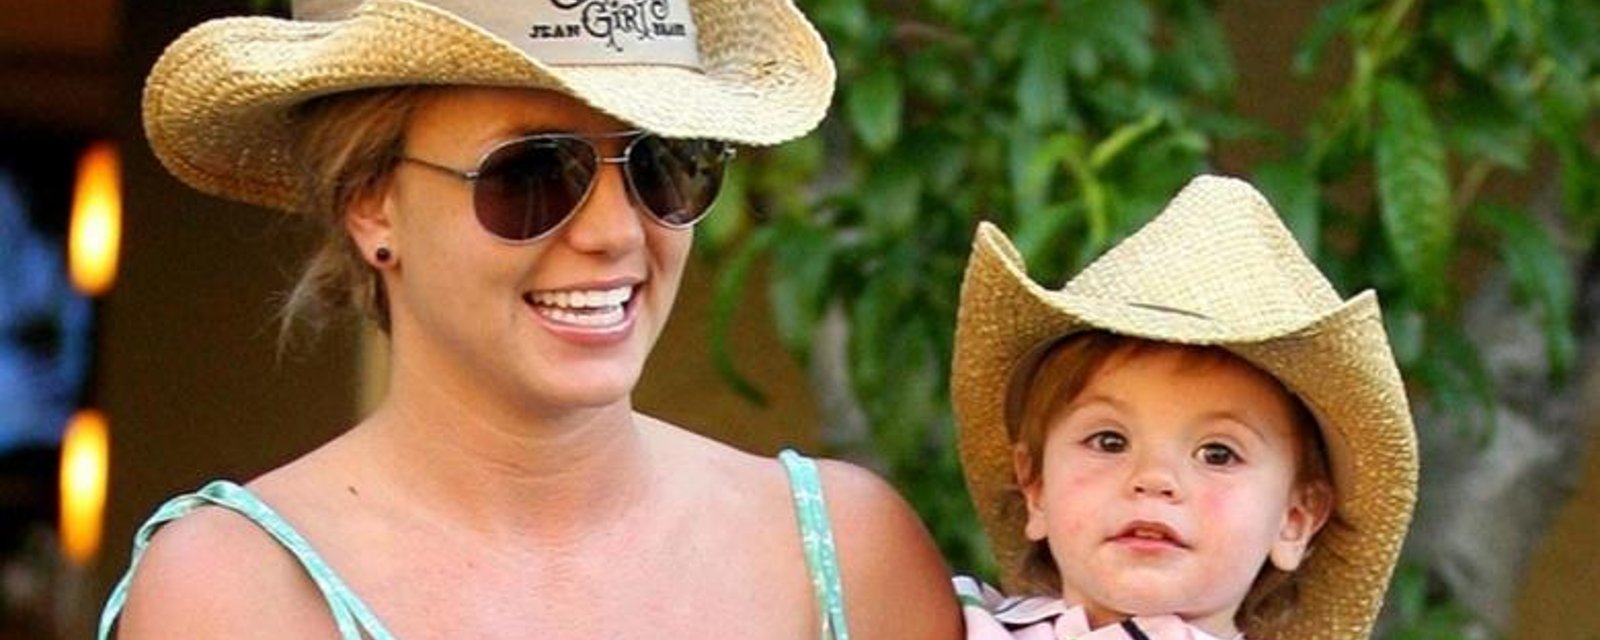 Les fils de Britney Spears ont beaucoup grandi... et ils sont beaux comme tout!